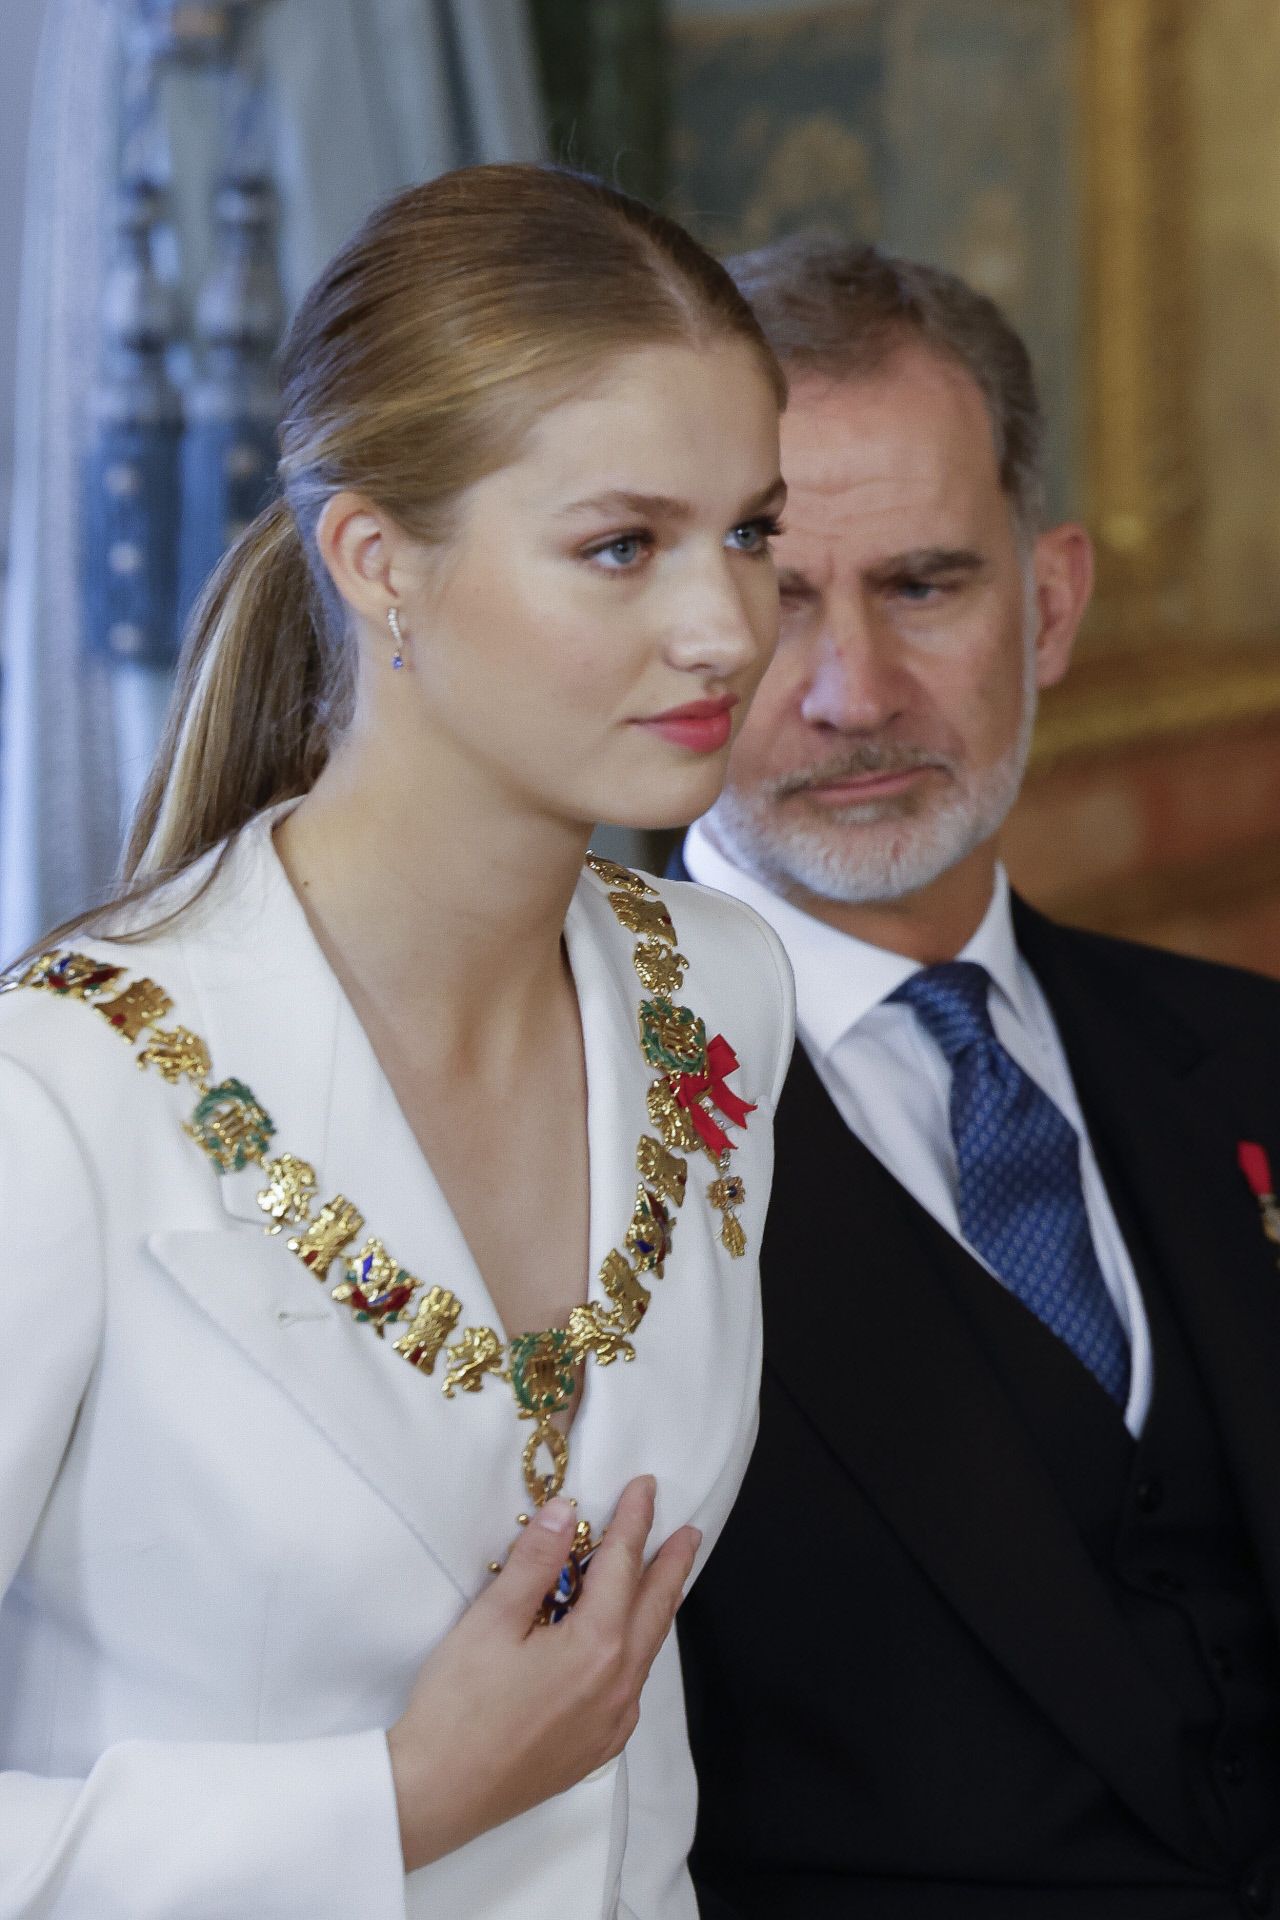 La princesa Leonor recibe el Collar de la Orden de Carlos III tras jurar la Constitución